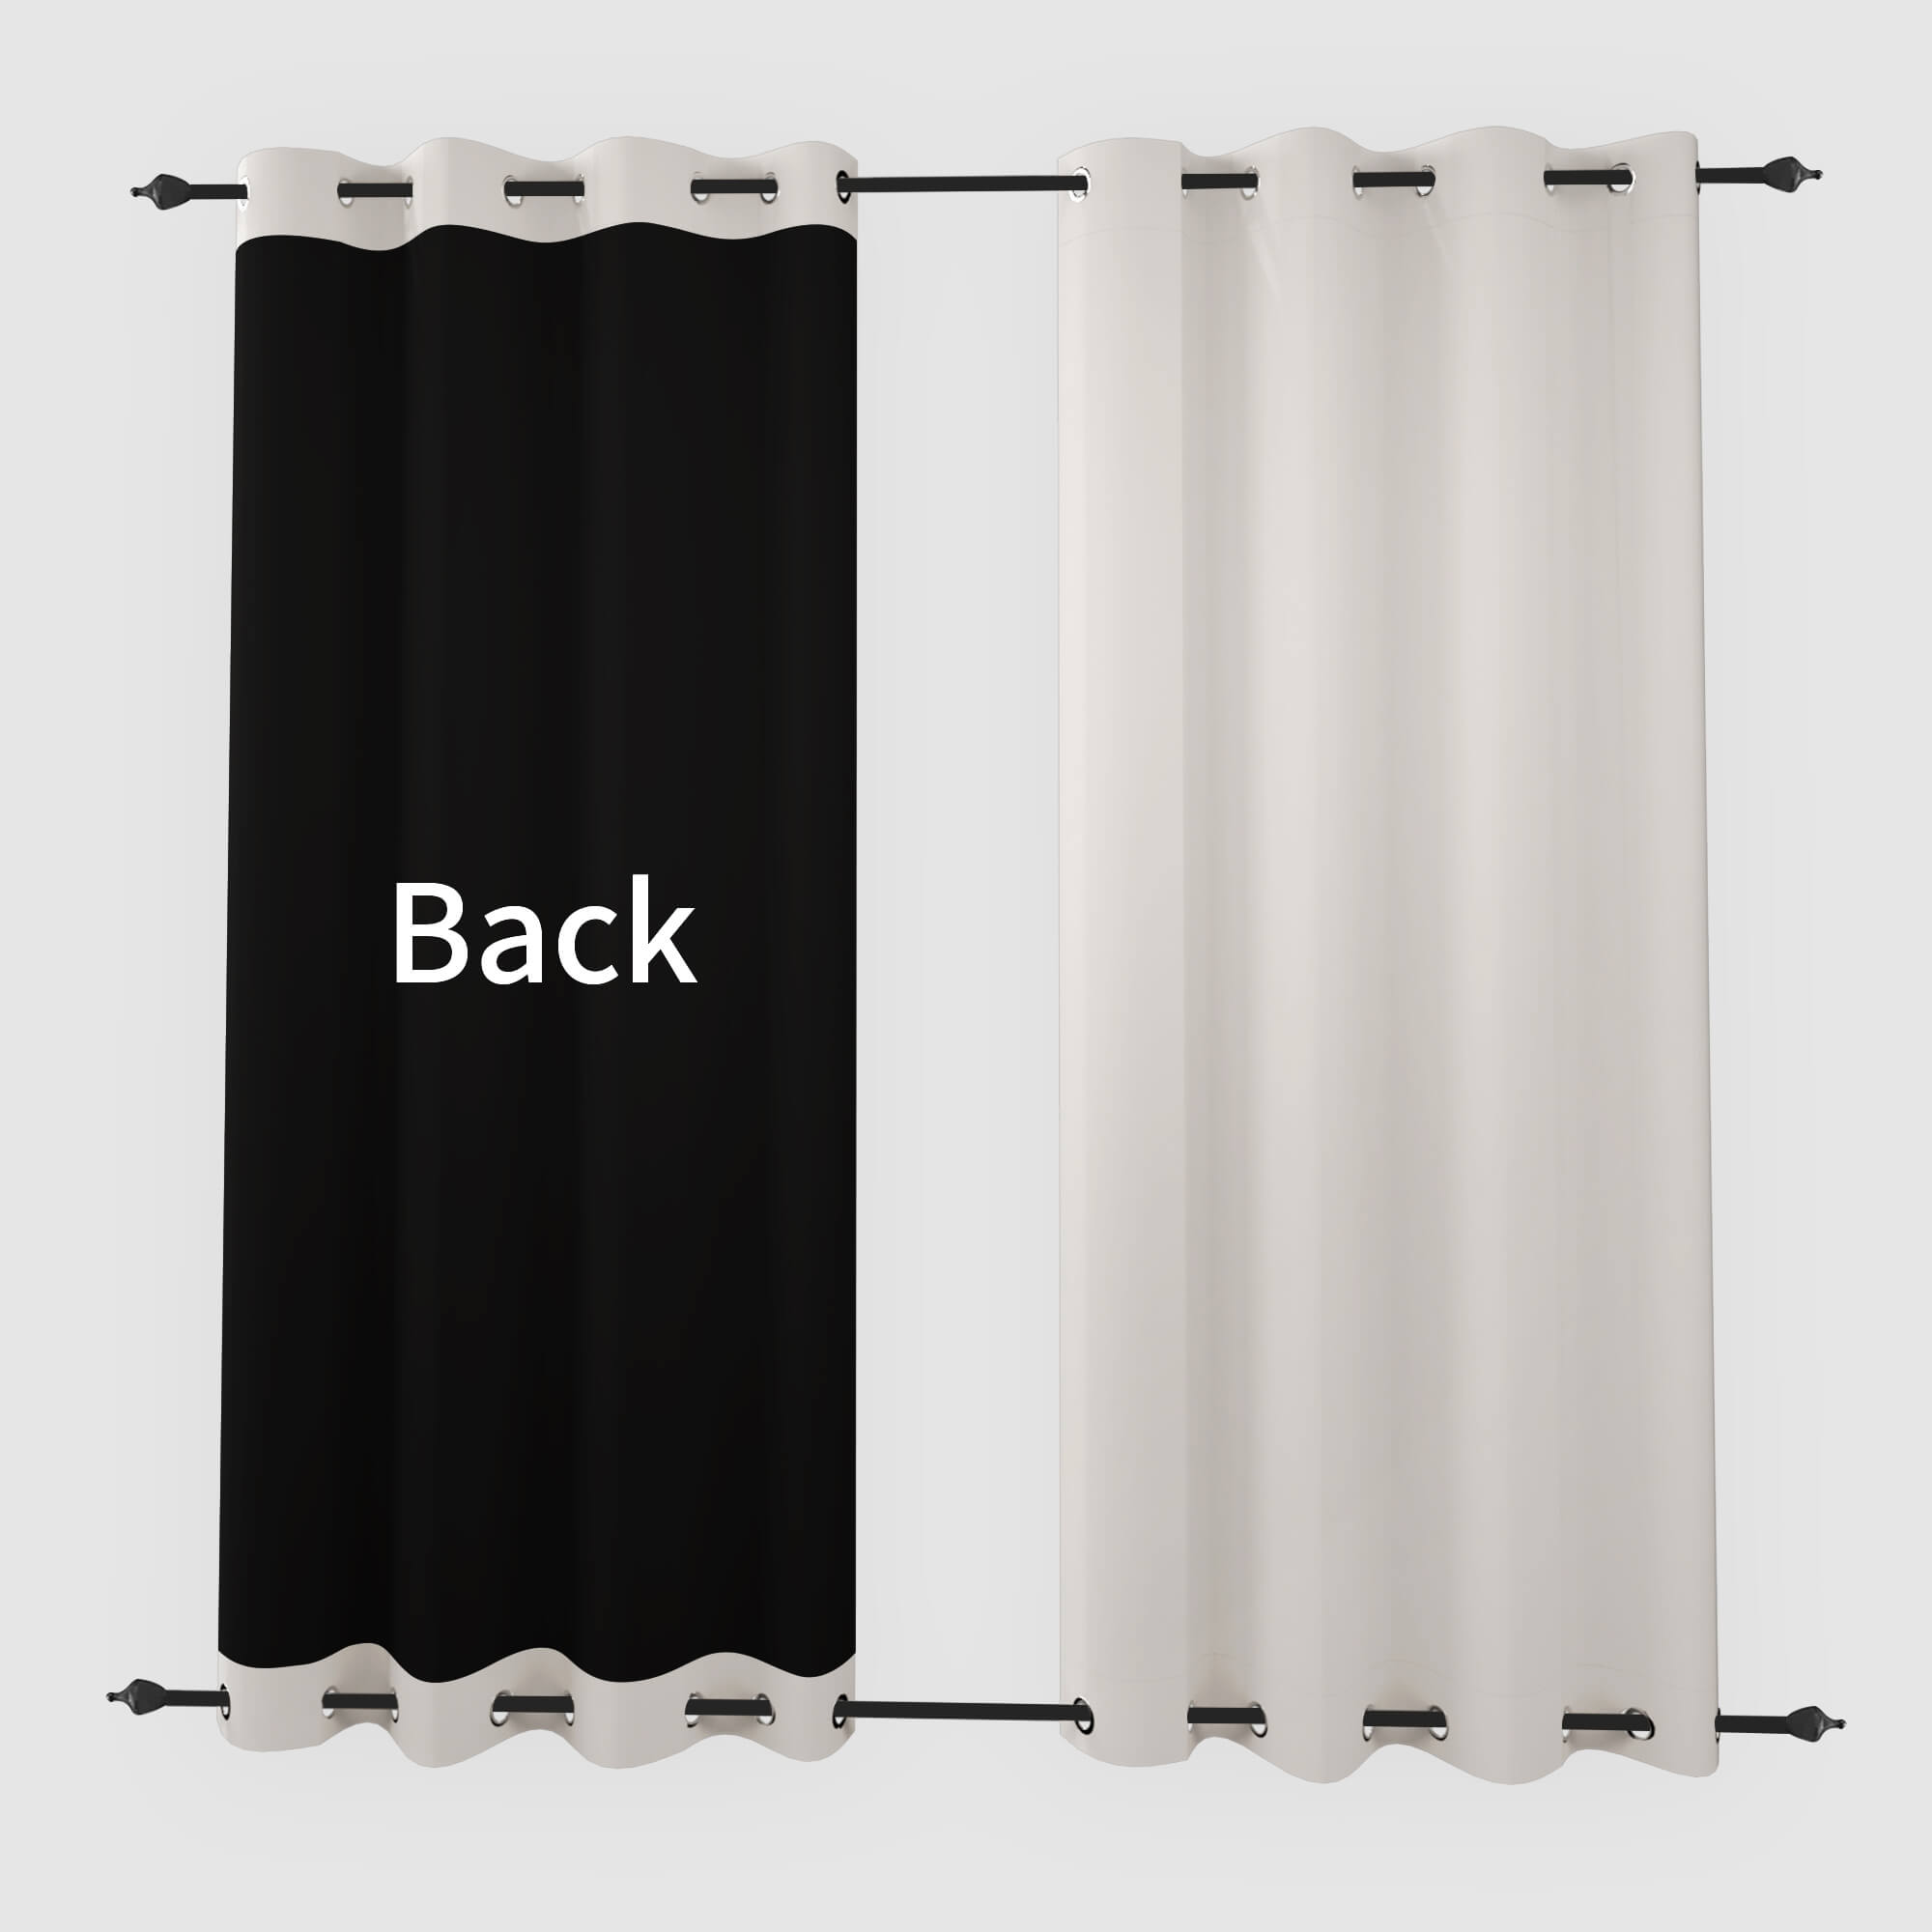 SNOWCITY Blackout Curtains Beige - Grommet Top & Bottom